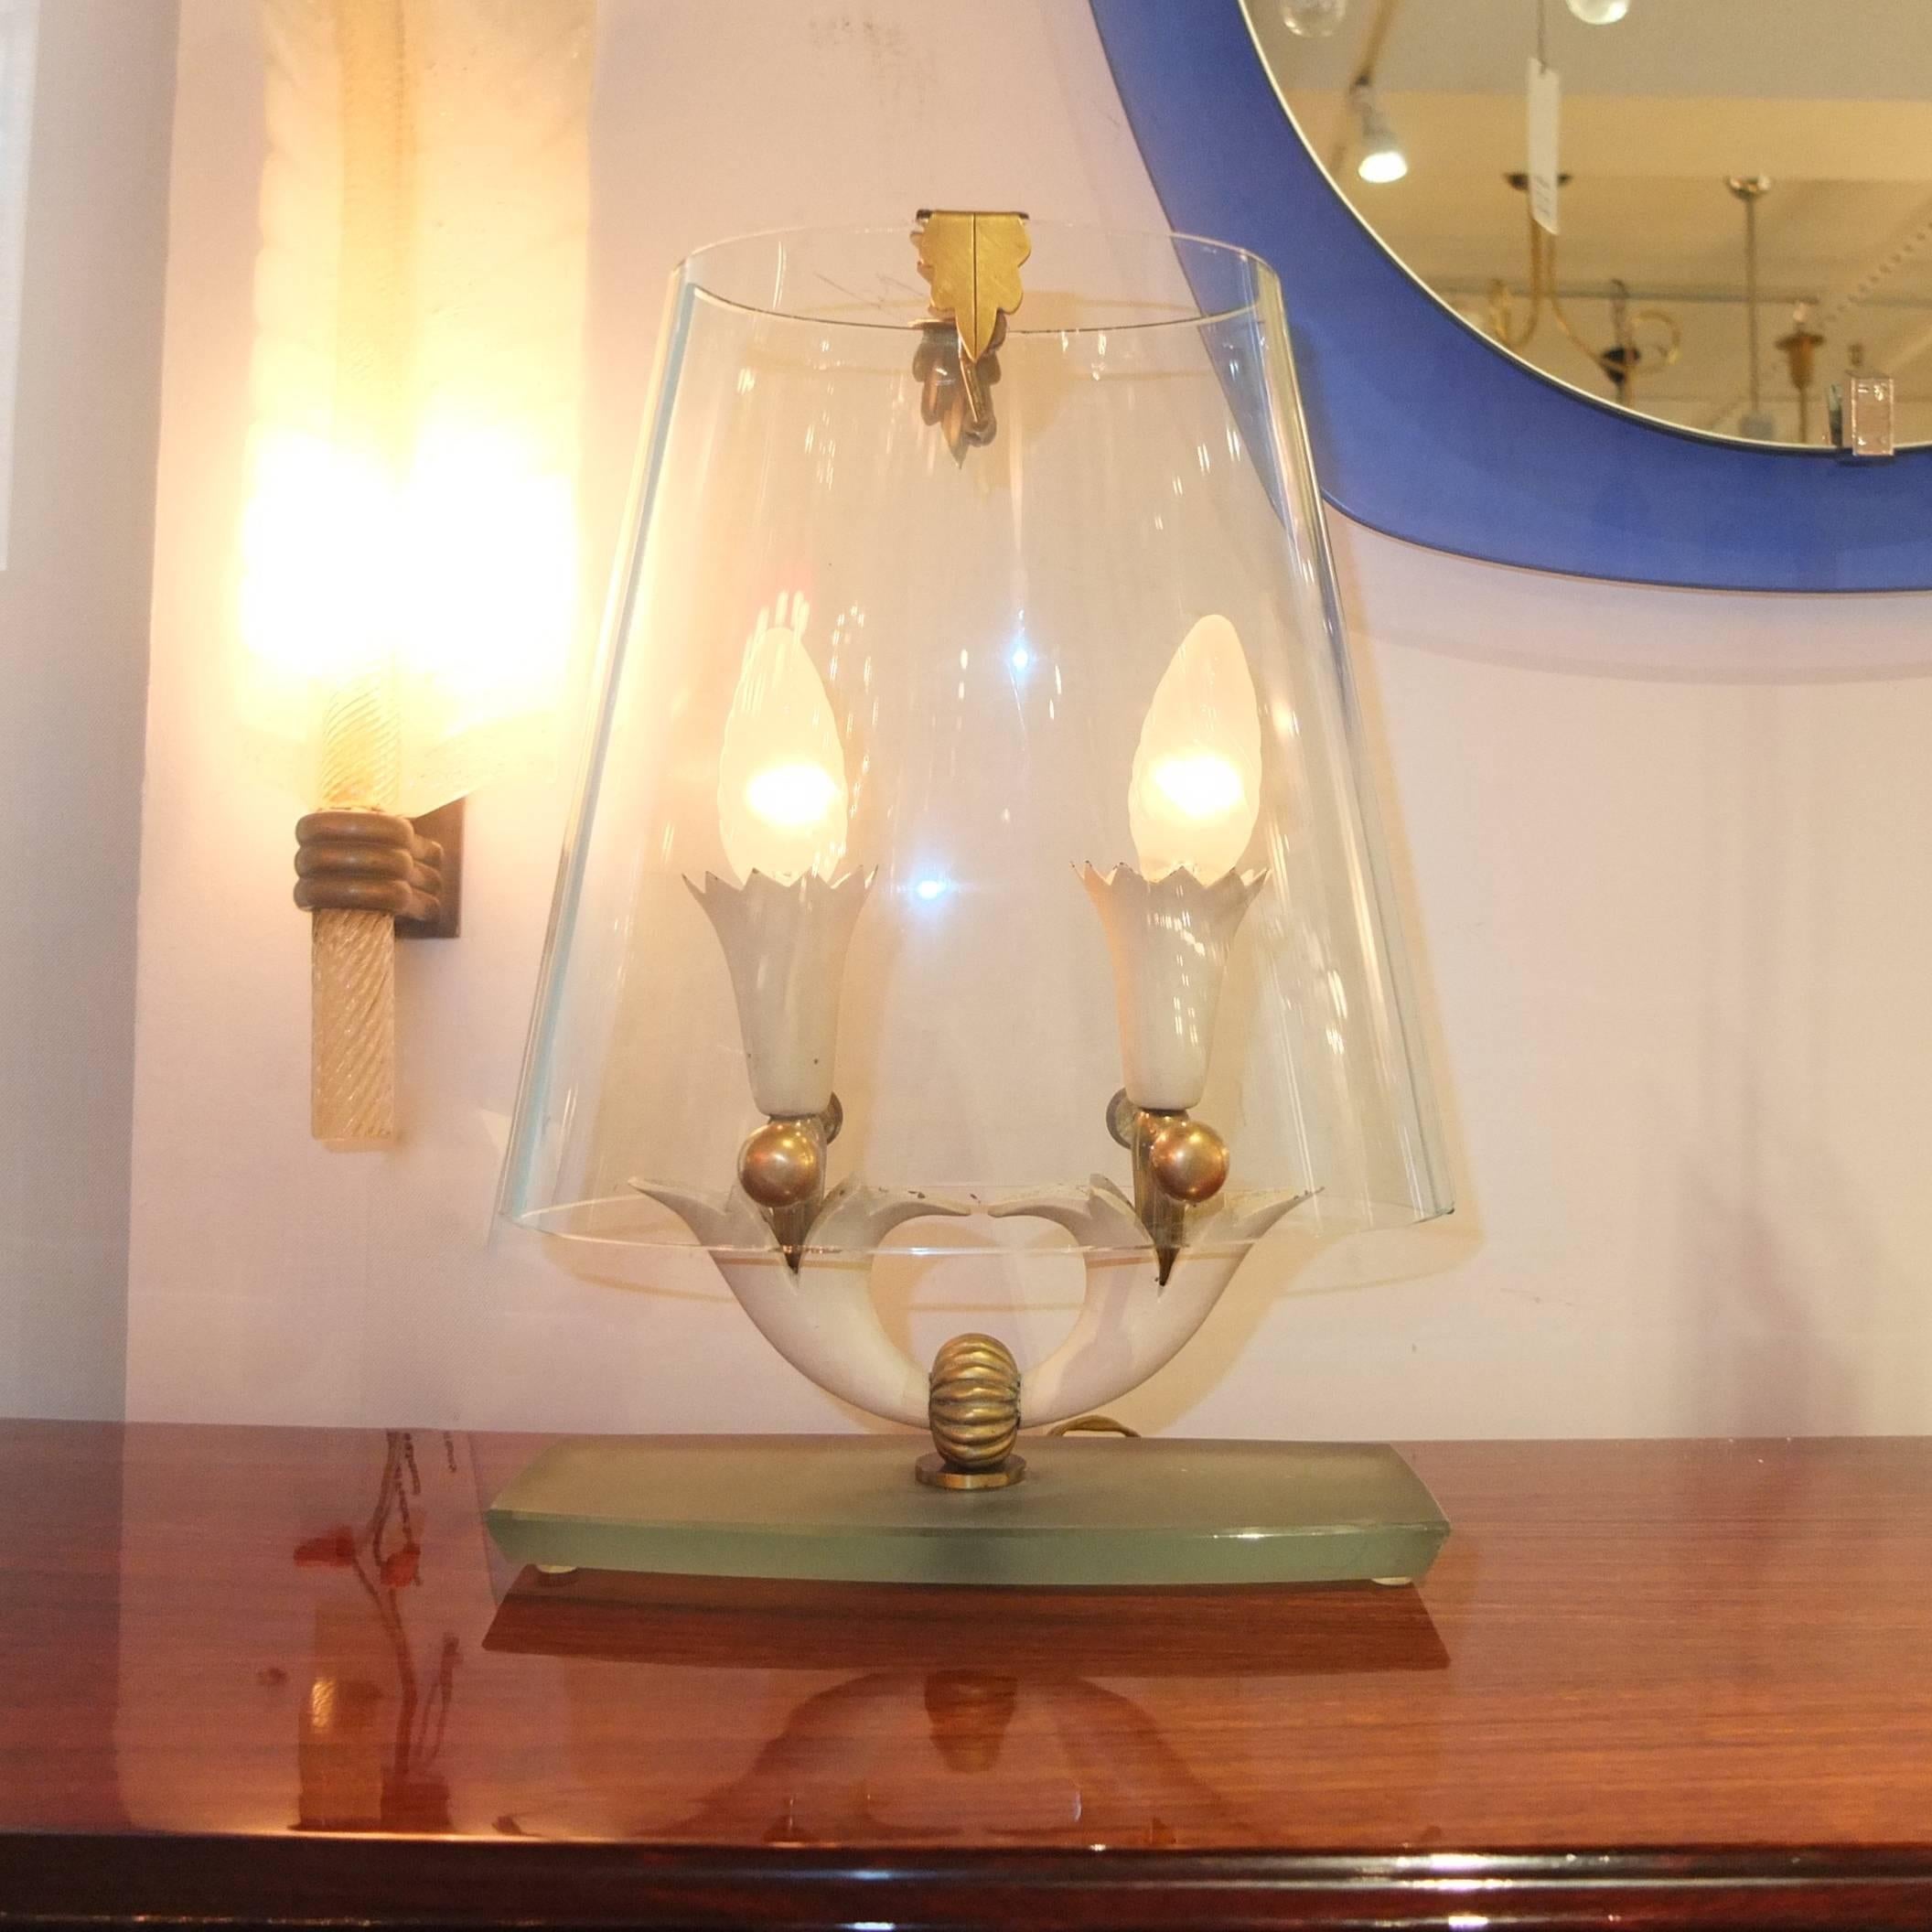 Seltene Tischlampe von Pietro Chiesa für Fontana Arte, ca. 1935-1940. Glassockel Saint Gobain, Messing und emailliertes Metall. Originaler zweiteiliger Schirm aus gebogenem Klarglas. Völlig originaler Zustand.